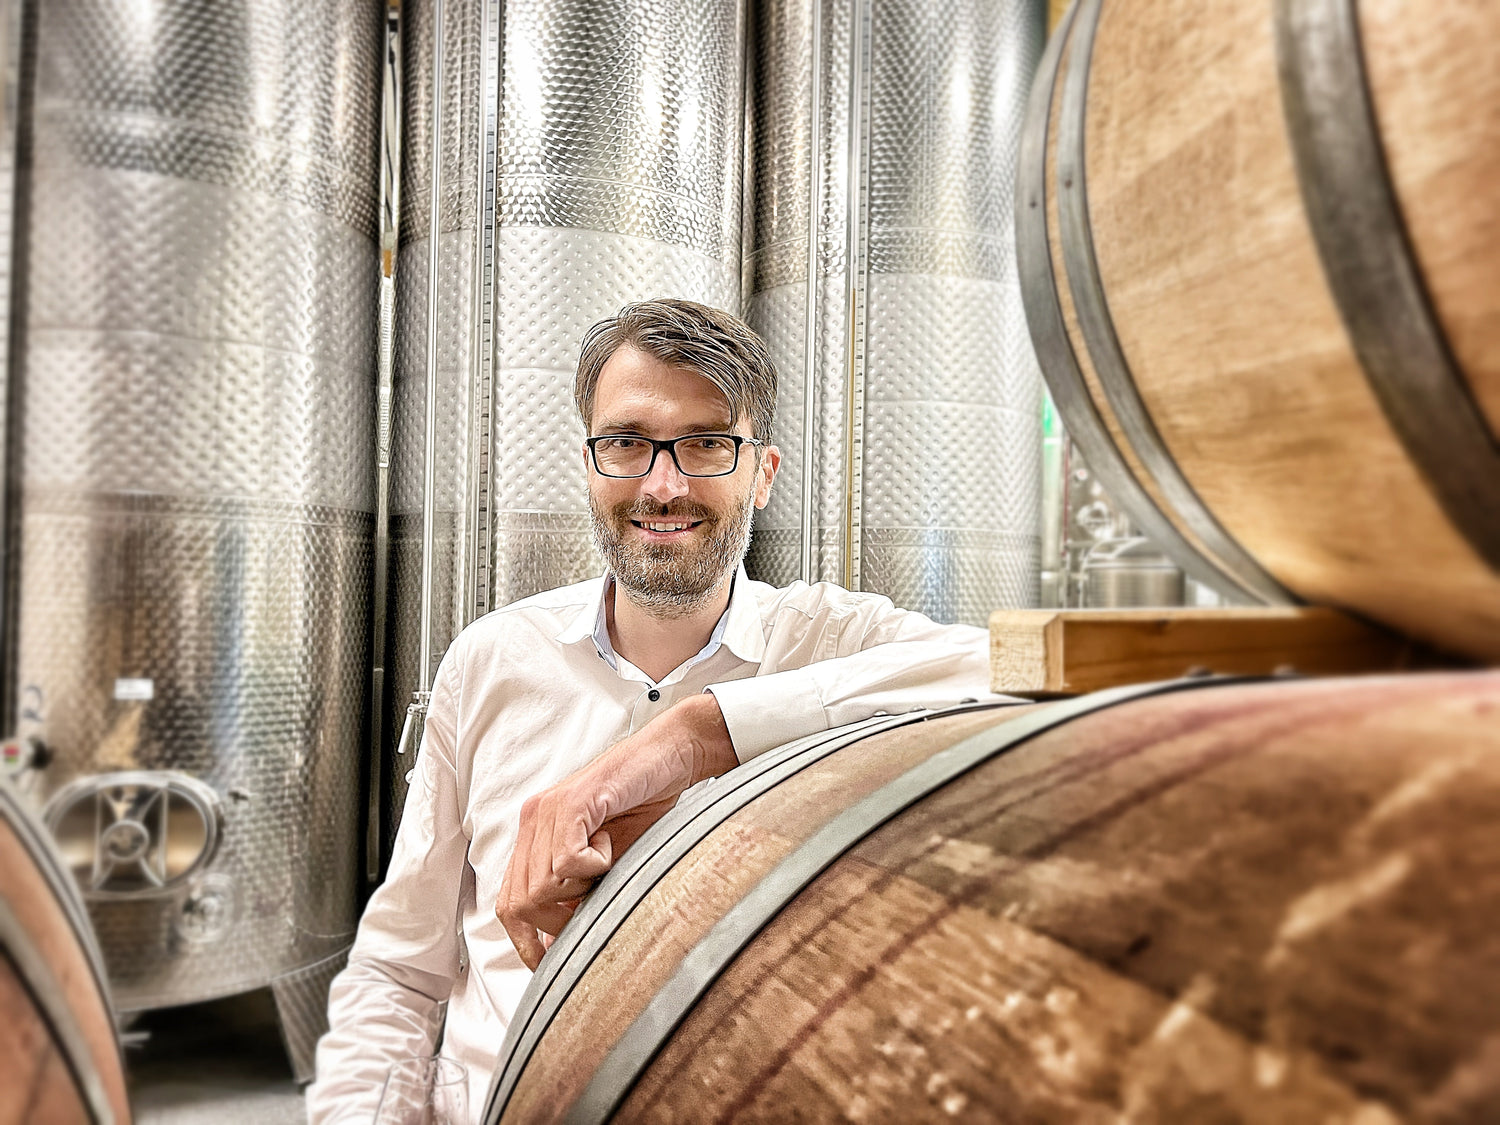 Frederic, Gründer von "alkoholfrei vom Winzer", im Weinkeller bei den Weinfässern